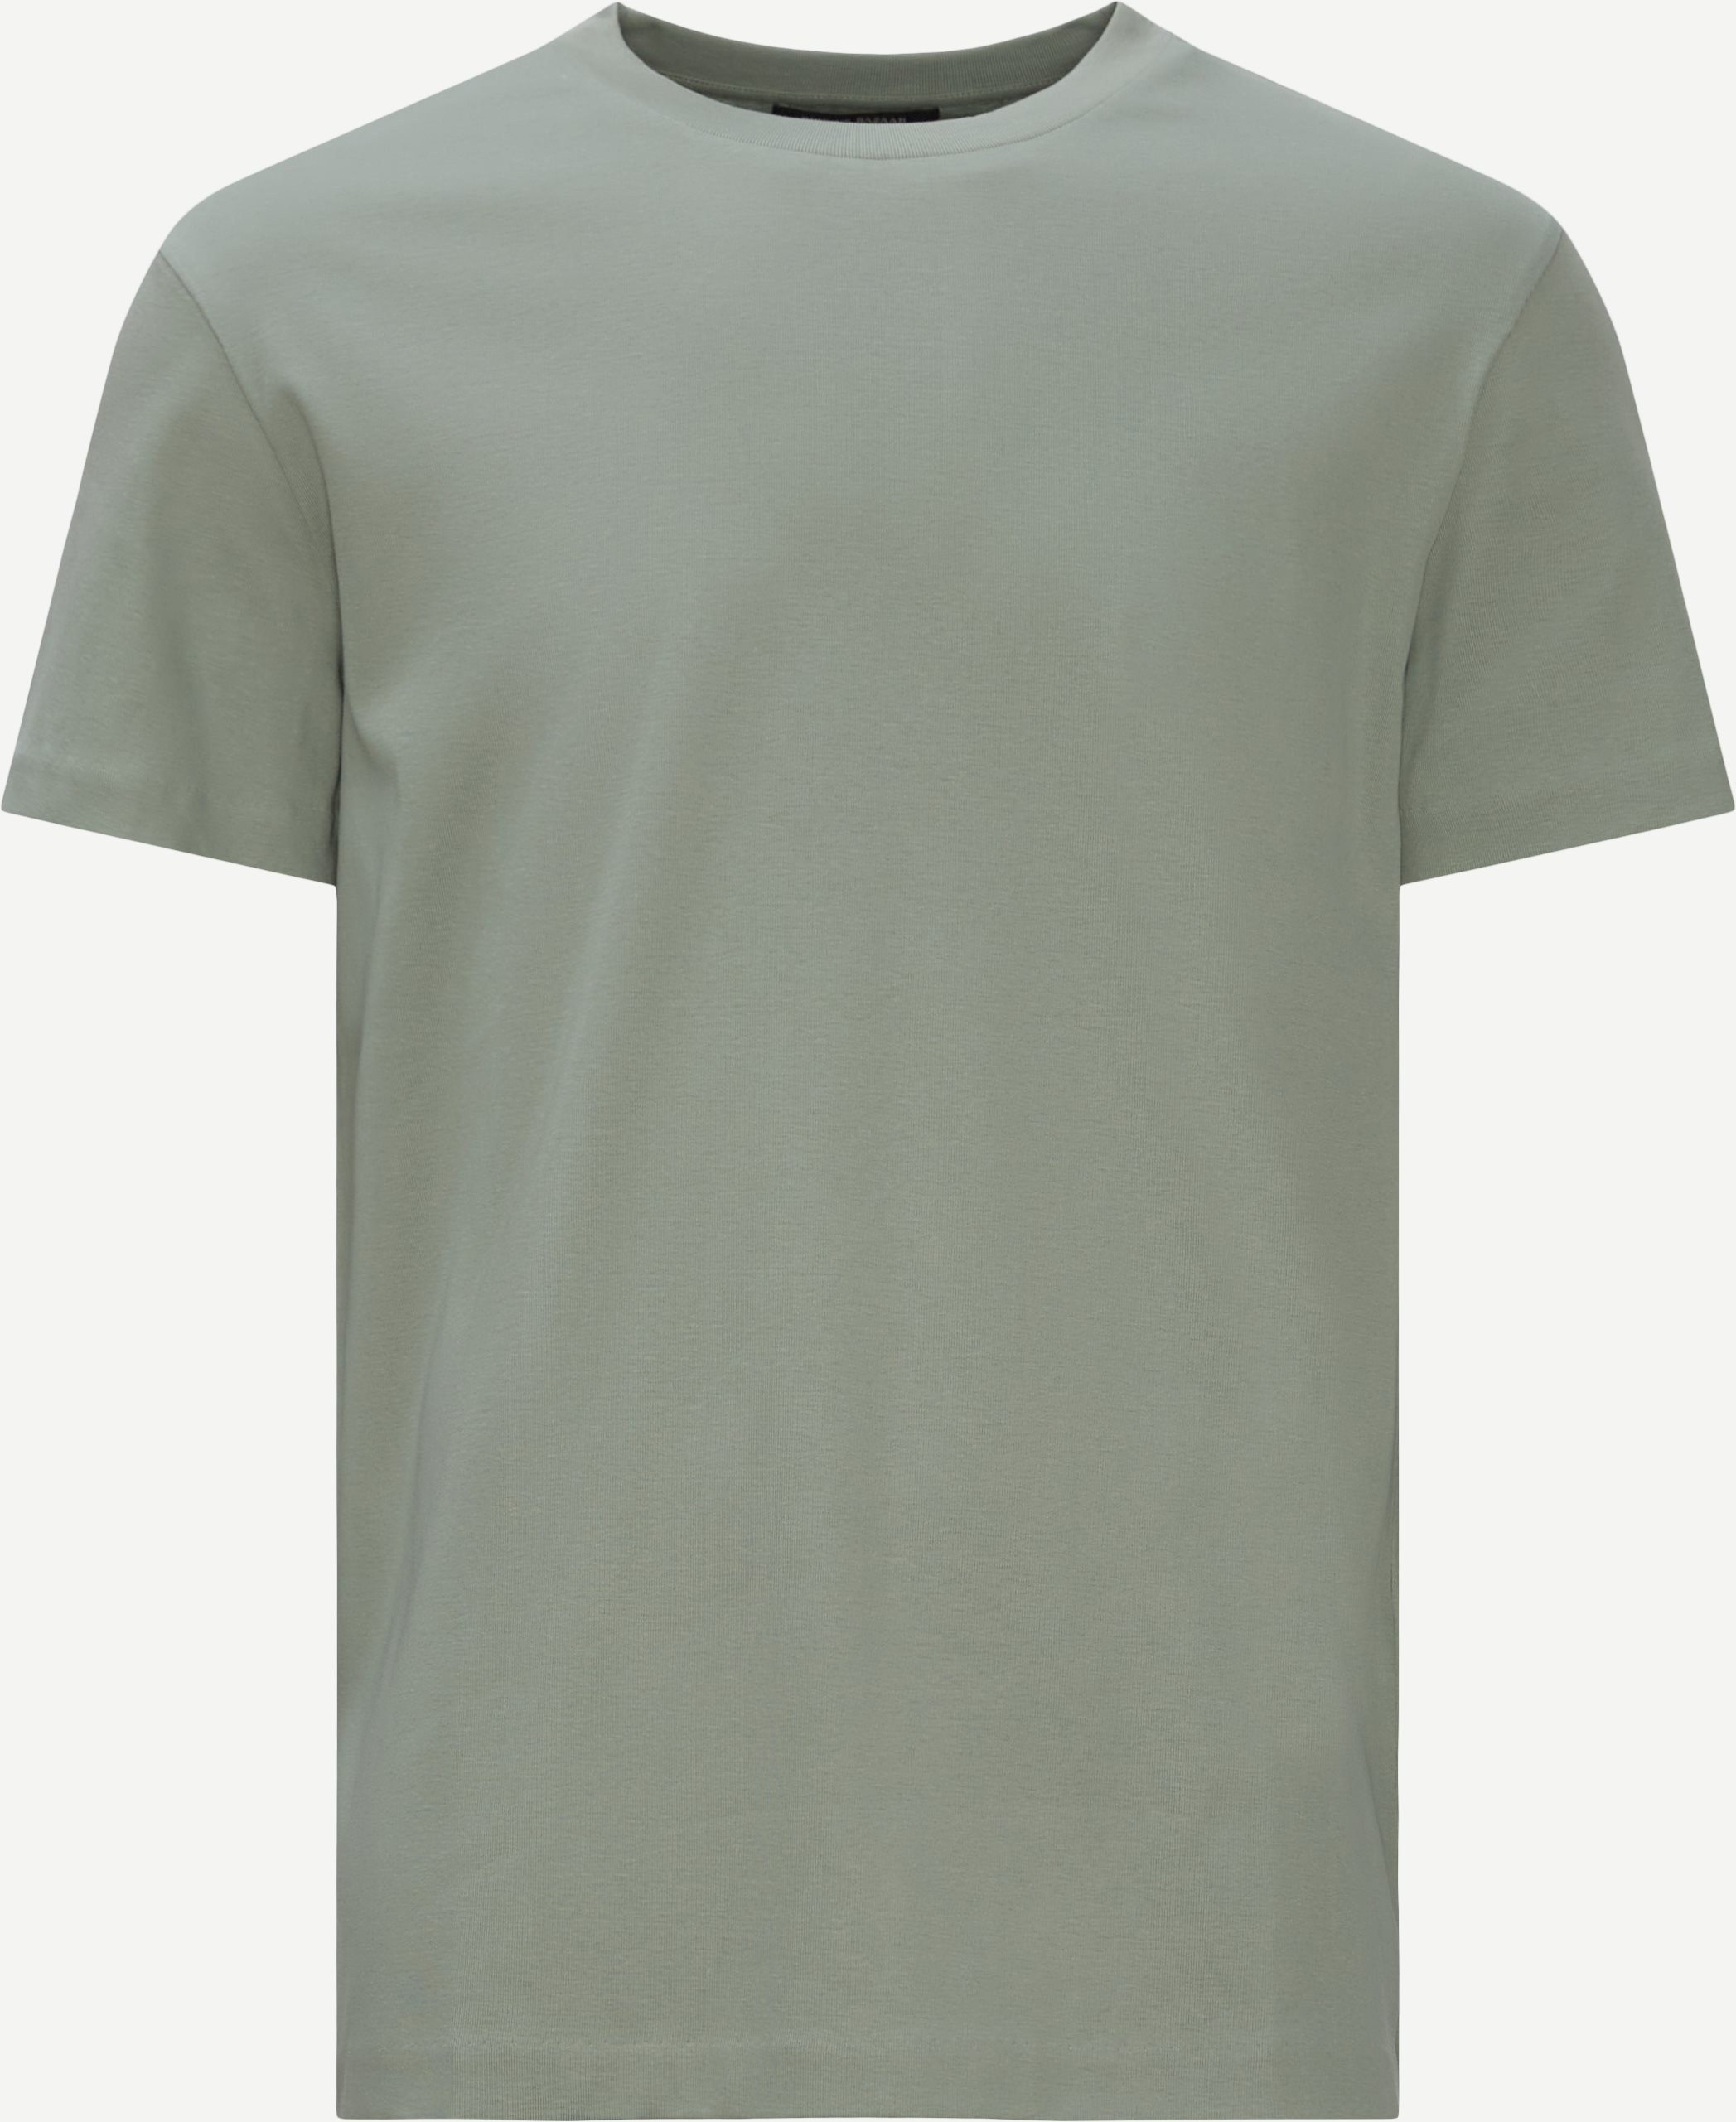 T-shirts - Regular fit - Grön